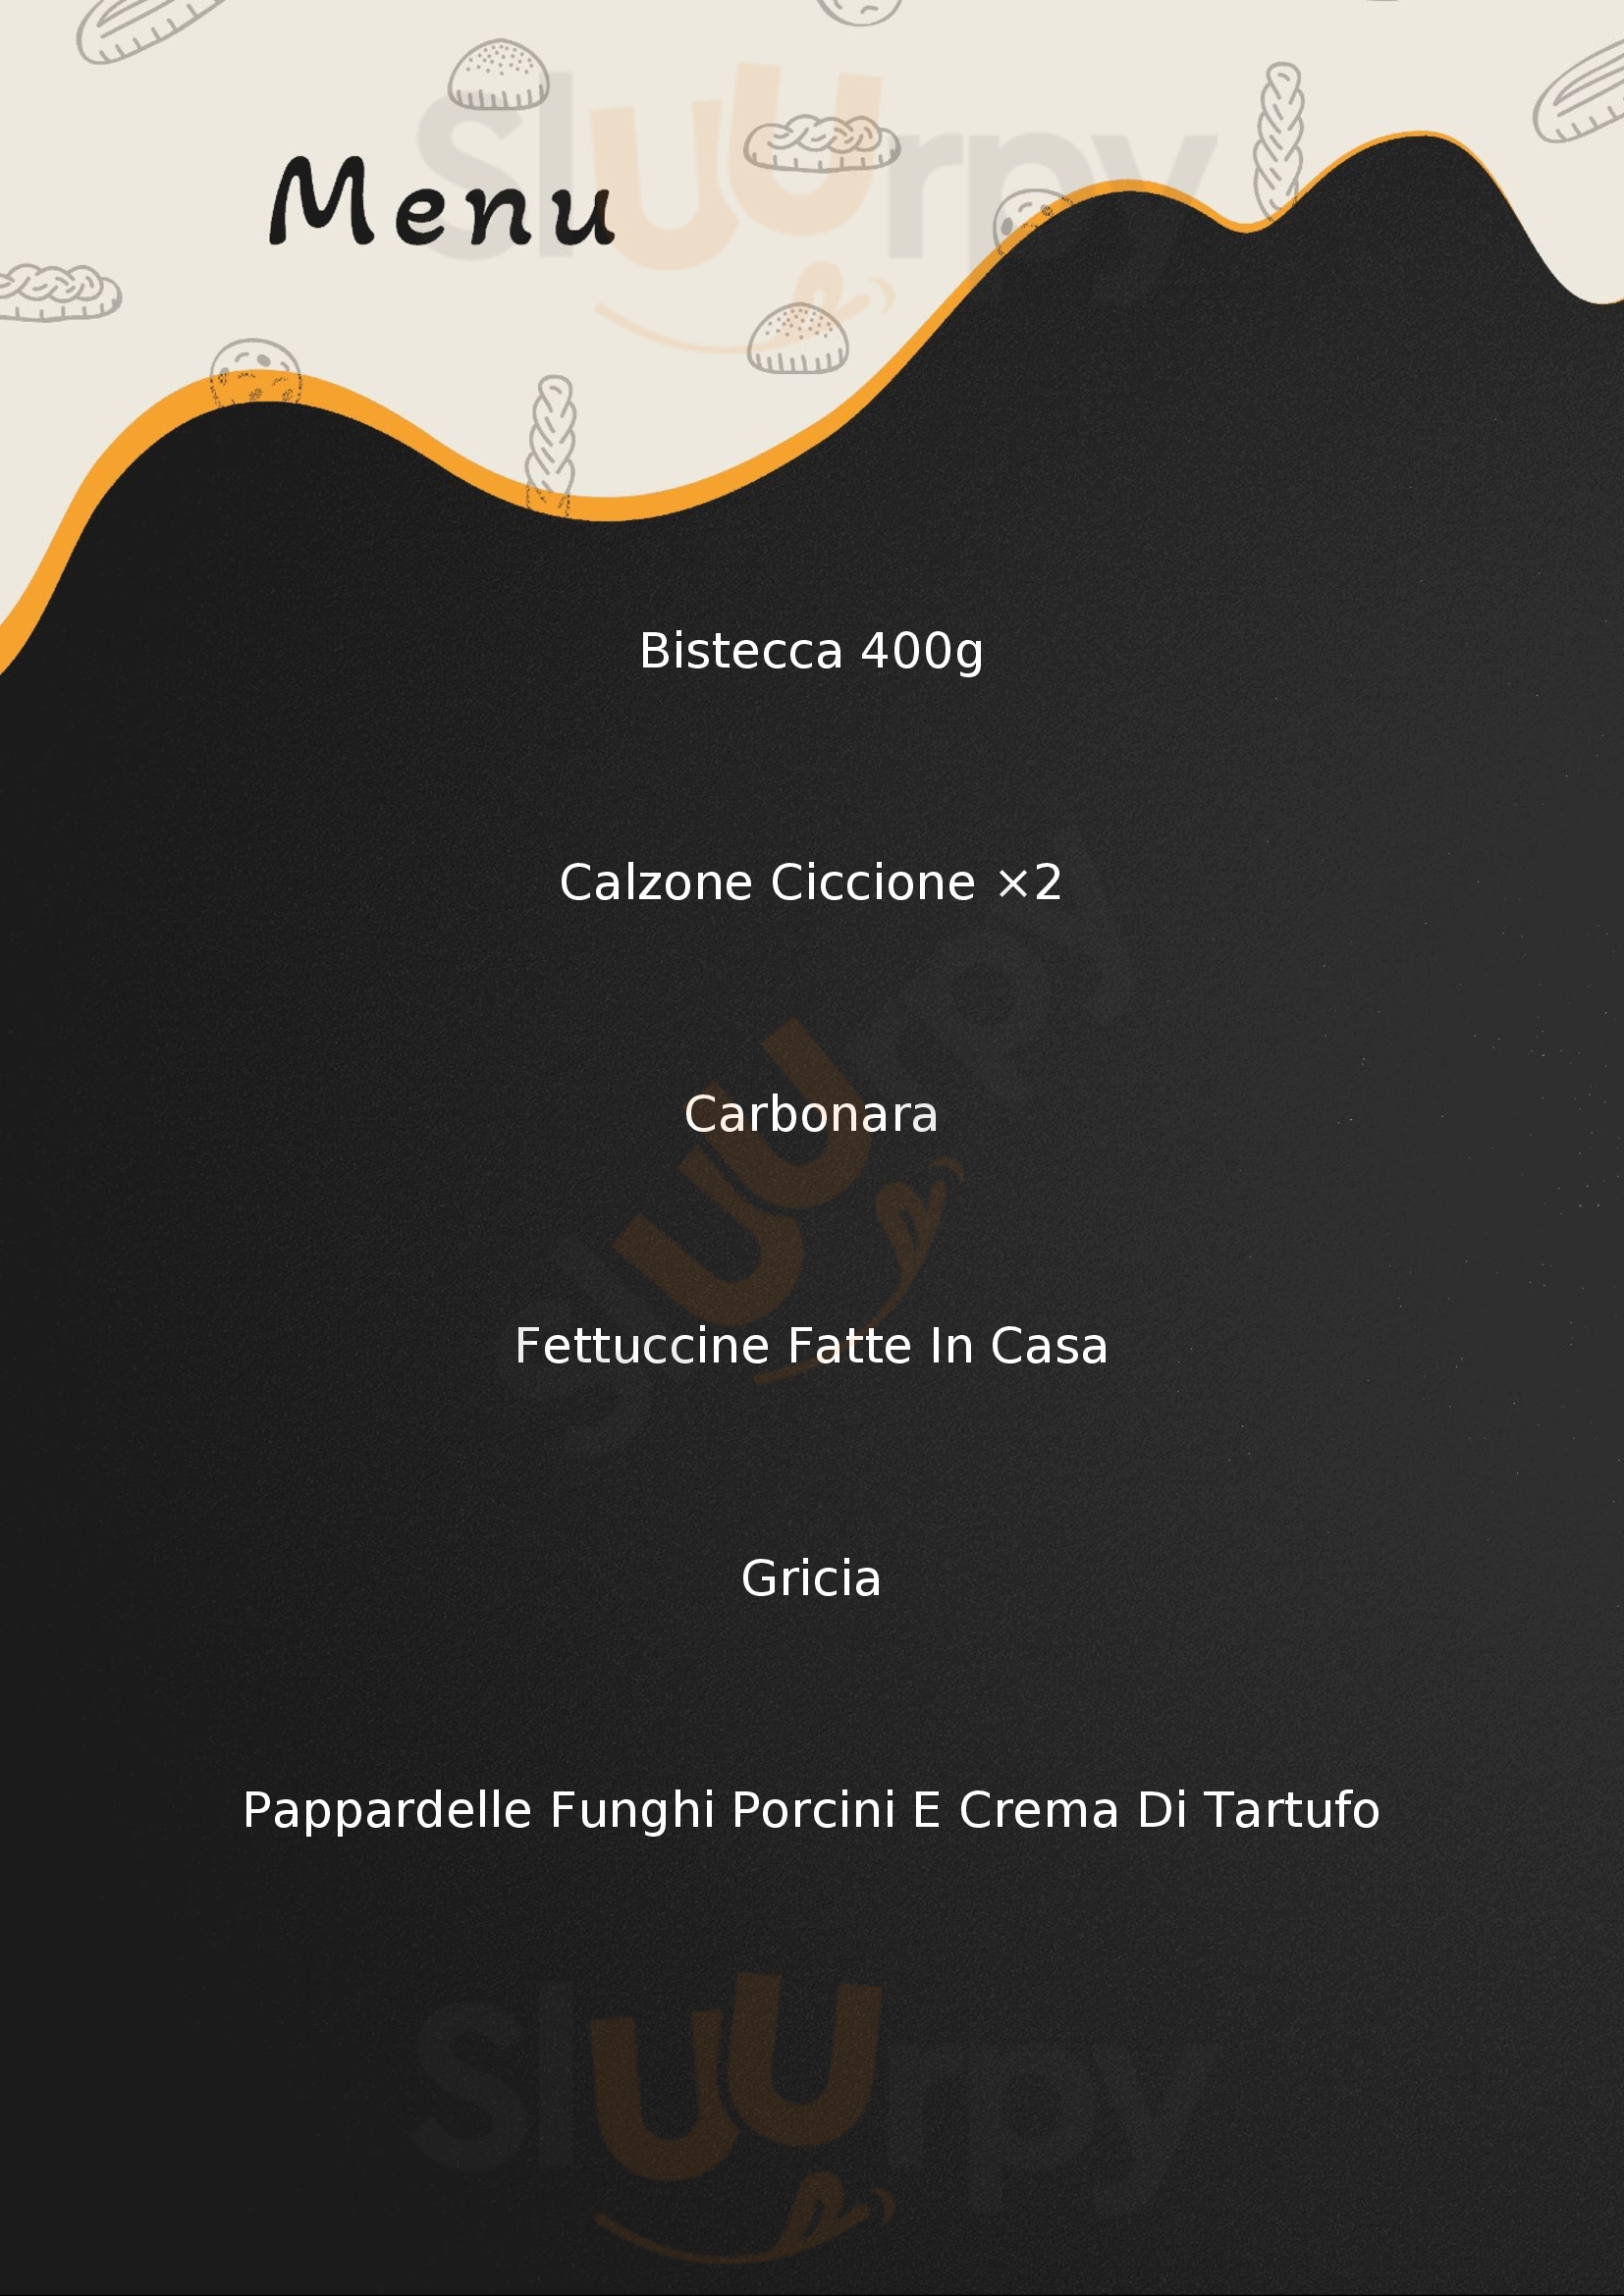 "Trattoria Pizzeria"la Botte" Roma menù 1 pagina